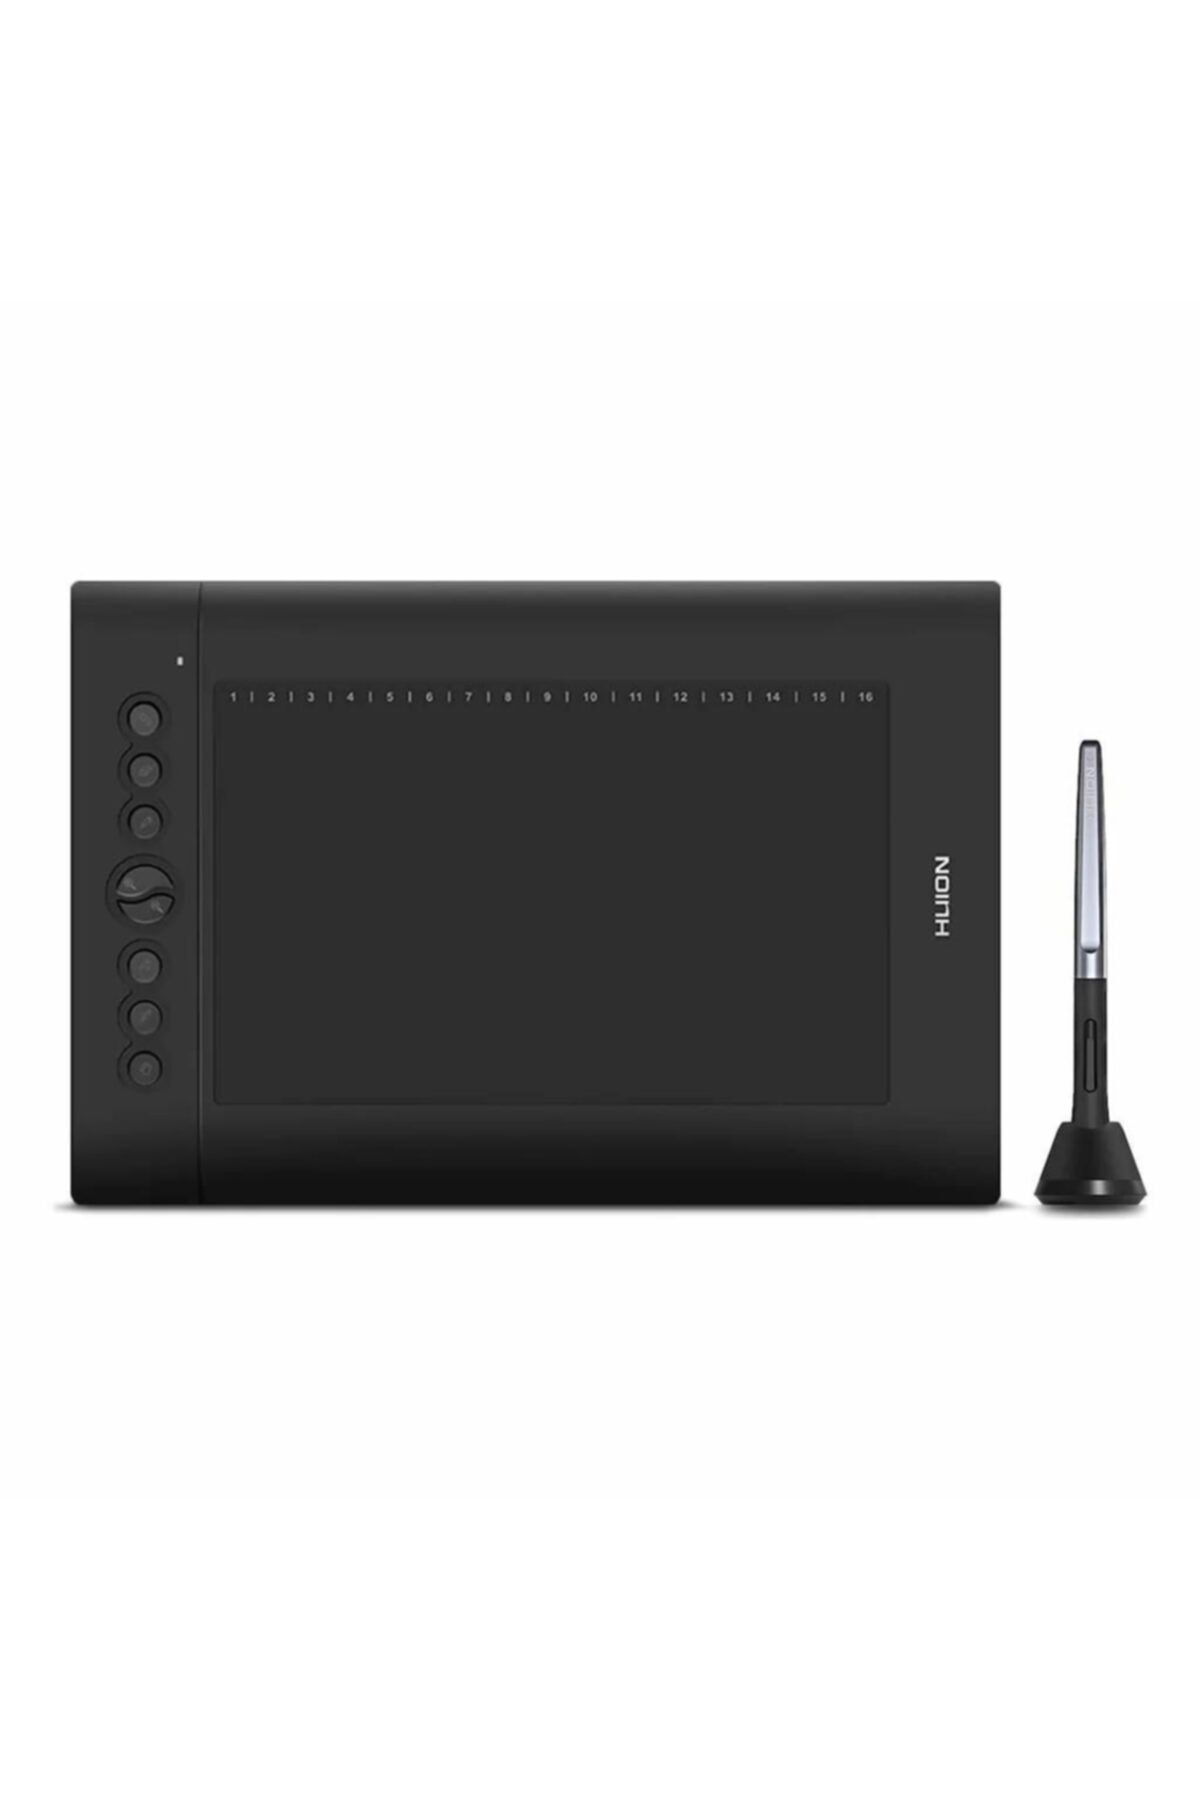 Huion H610 Pro V2 10 X 6.25" Grafik Tablet